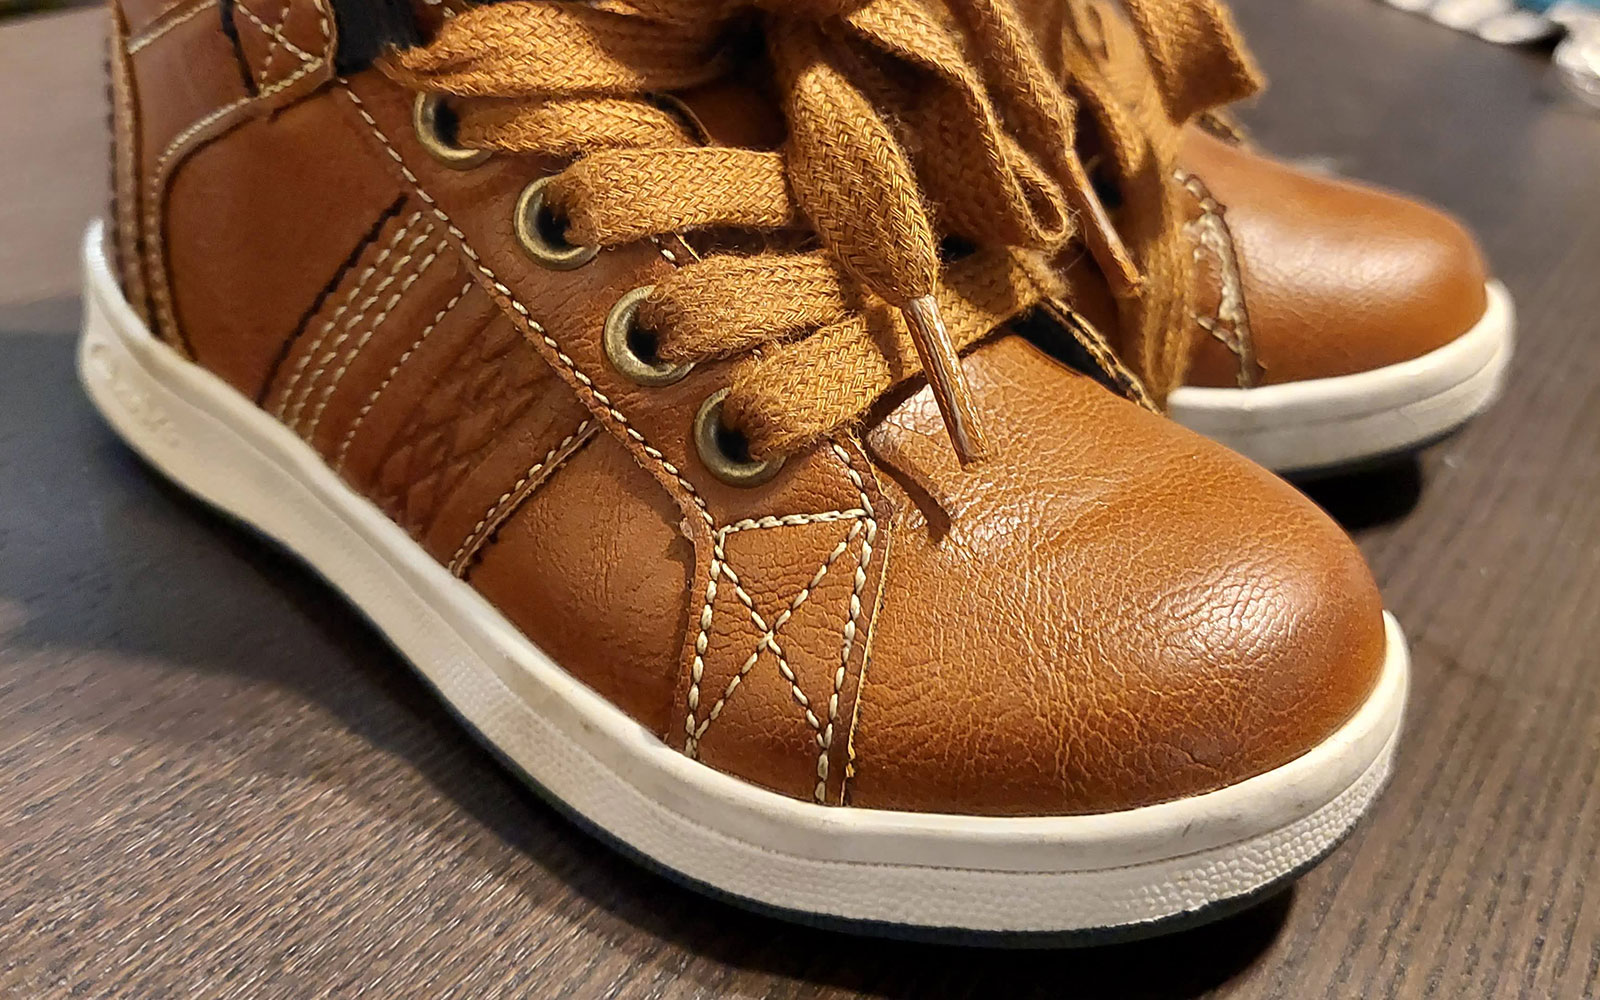 Closeup of shoe